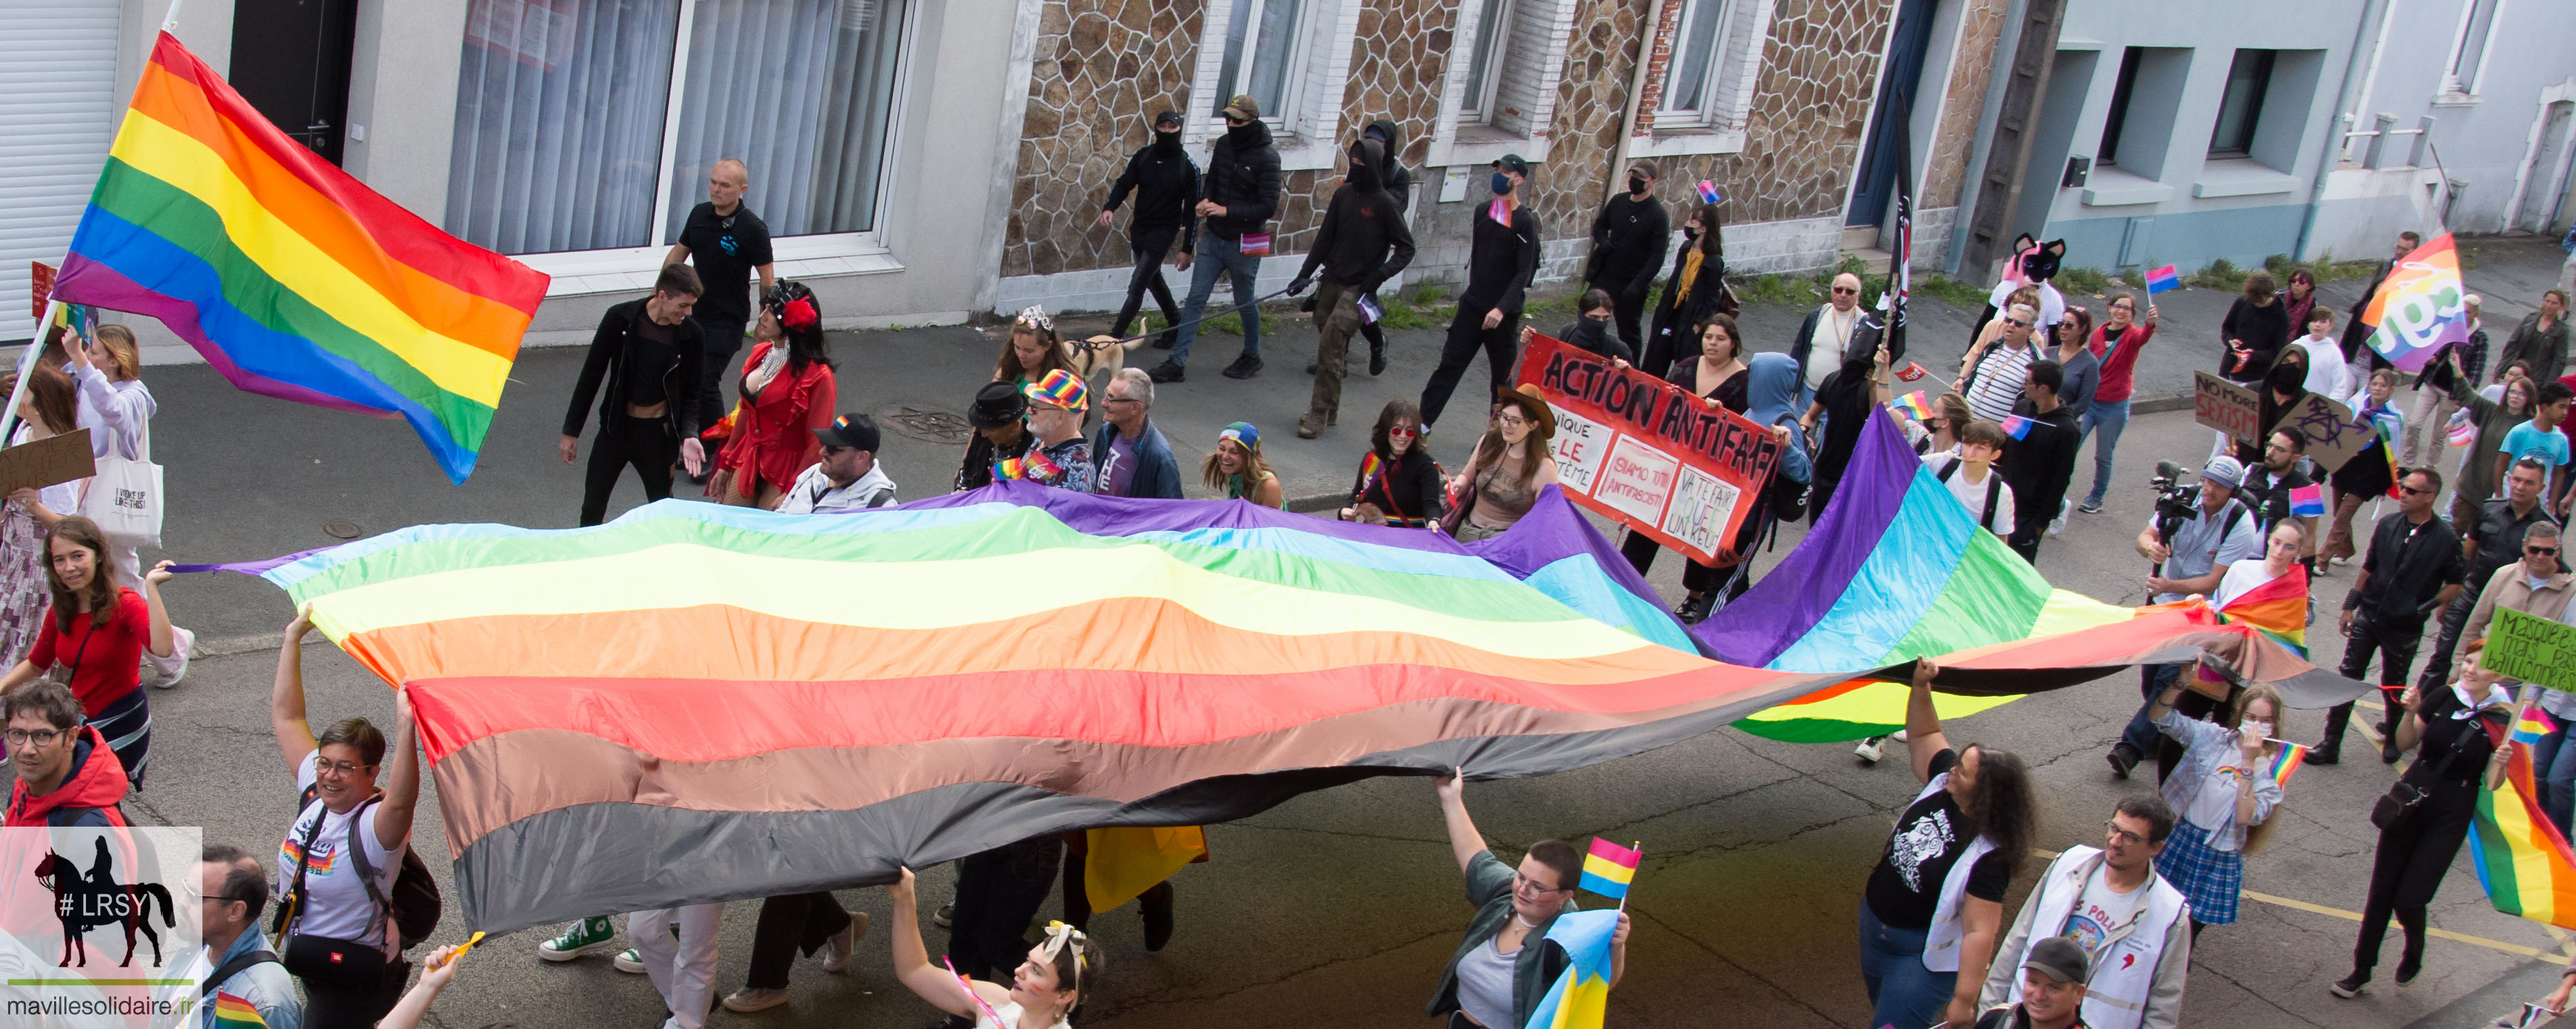 Marche des fierté LGBT LRSY mavillesolidaire.fr Vendée 23